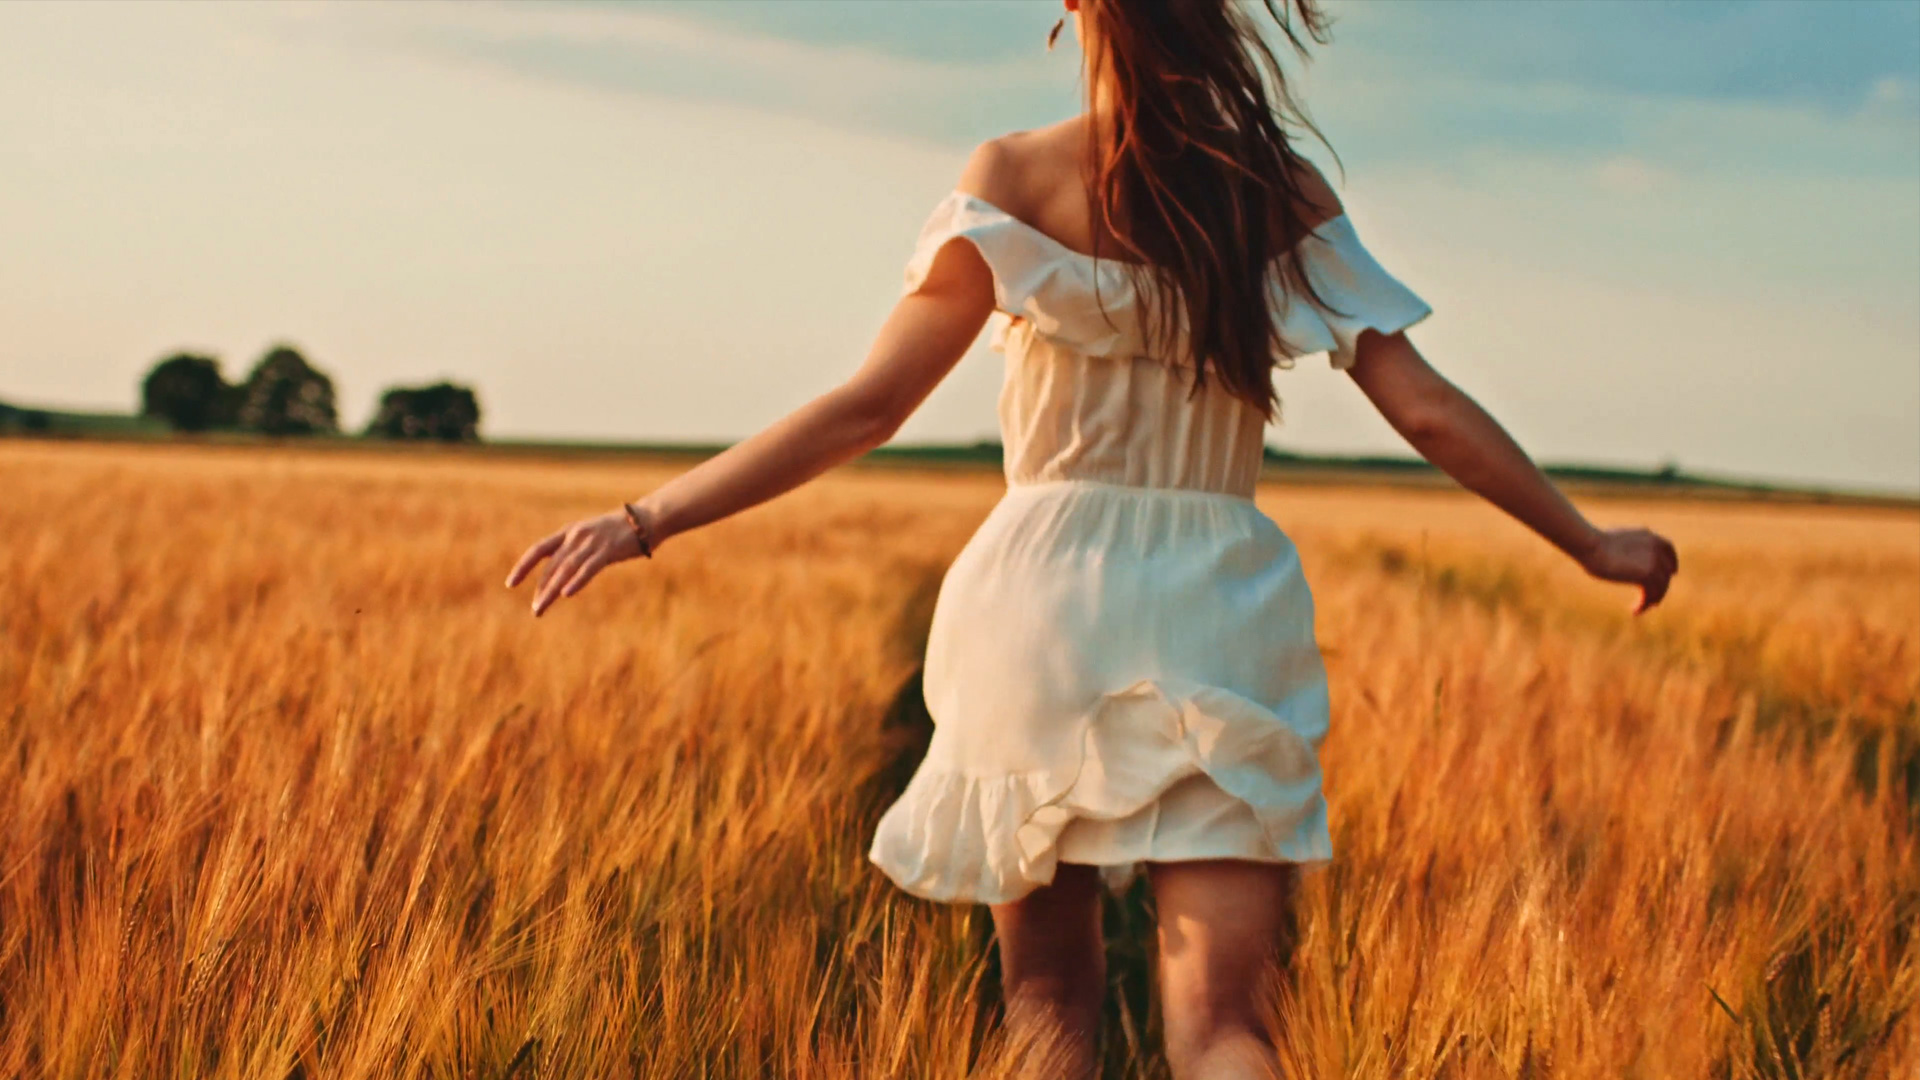 Беги девочка беги песня. Девушка бежит в поле. Девушка в поле. Девушка бежит по полю. Счастливая девушка.